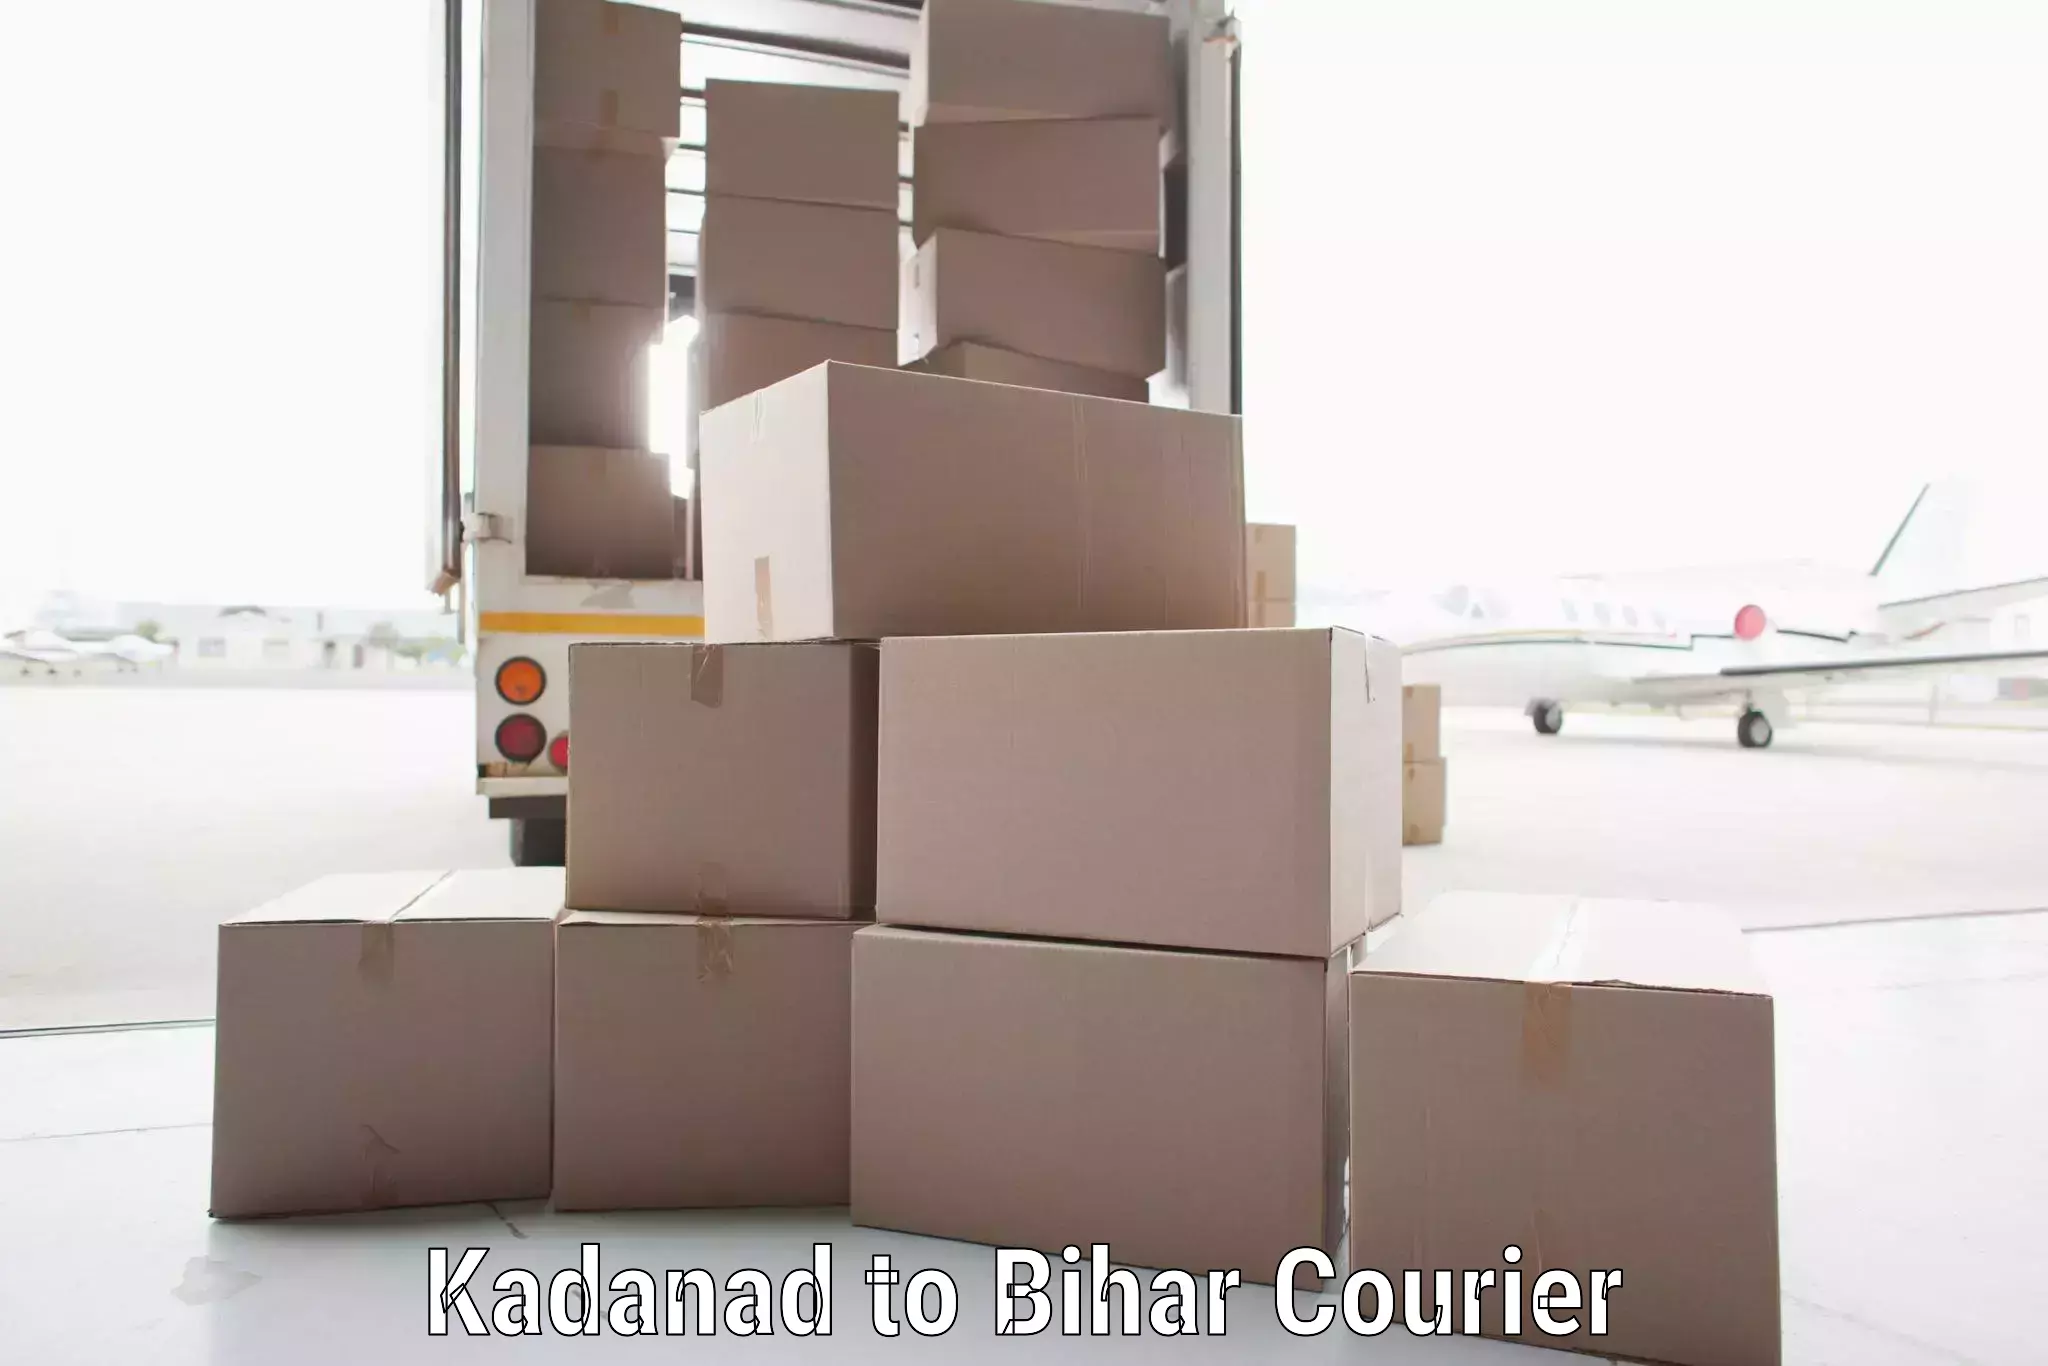 Global courier networks Kadanad to Bihar